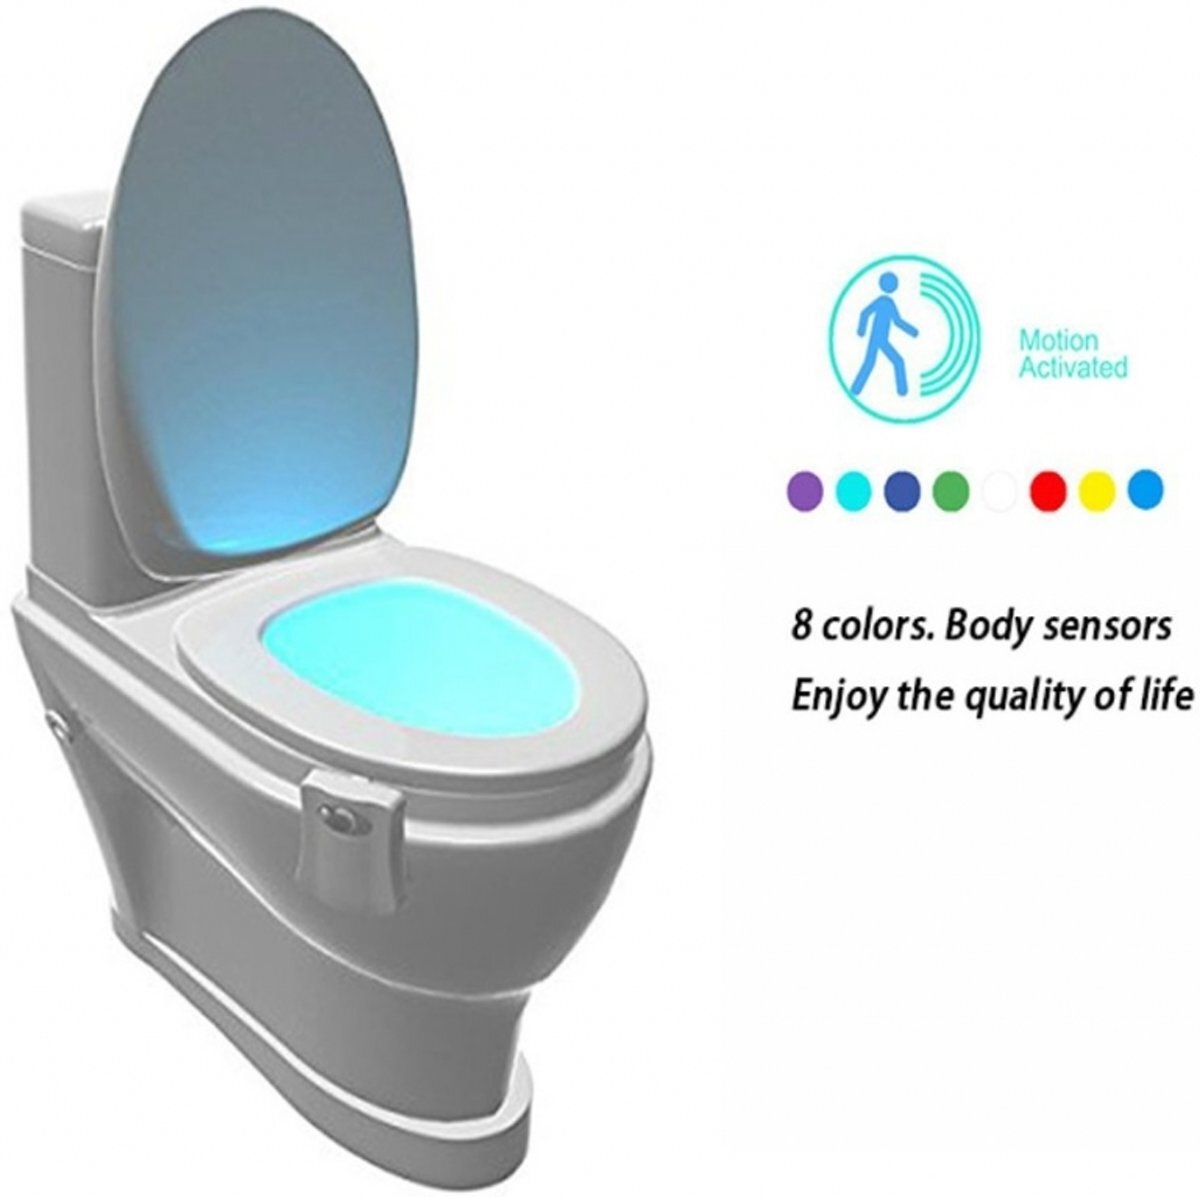 i12Cover toiletpotverlichting-automatisch-led-licht-toilet-bril-verlichting-voor-wc-in-8-stelbare-kleuren-wc-lamp-nachtlamp-bewegingssensor-toiletpot, wit , merk